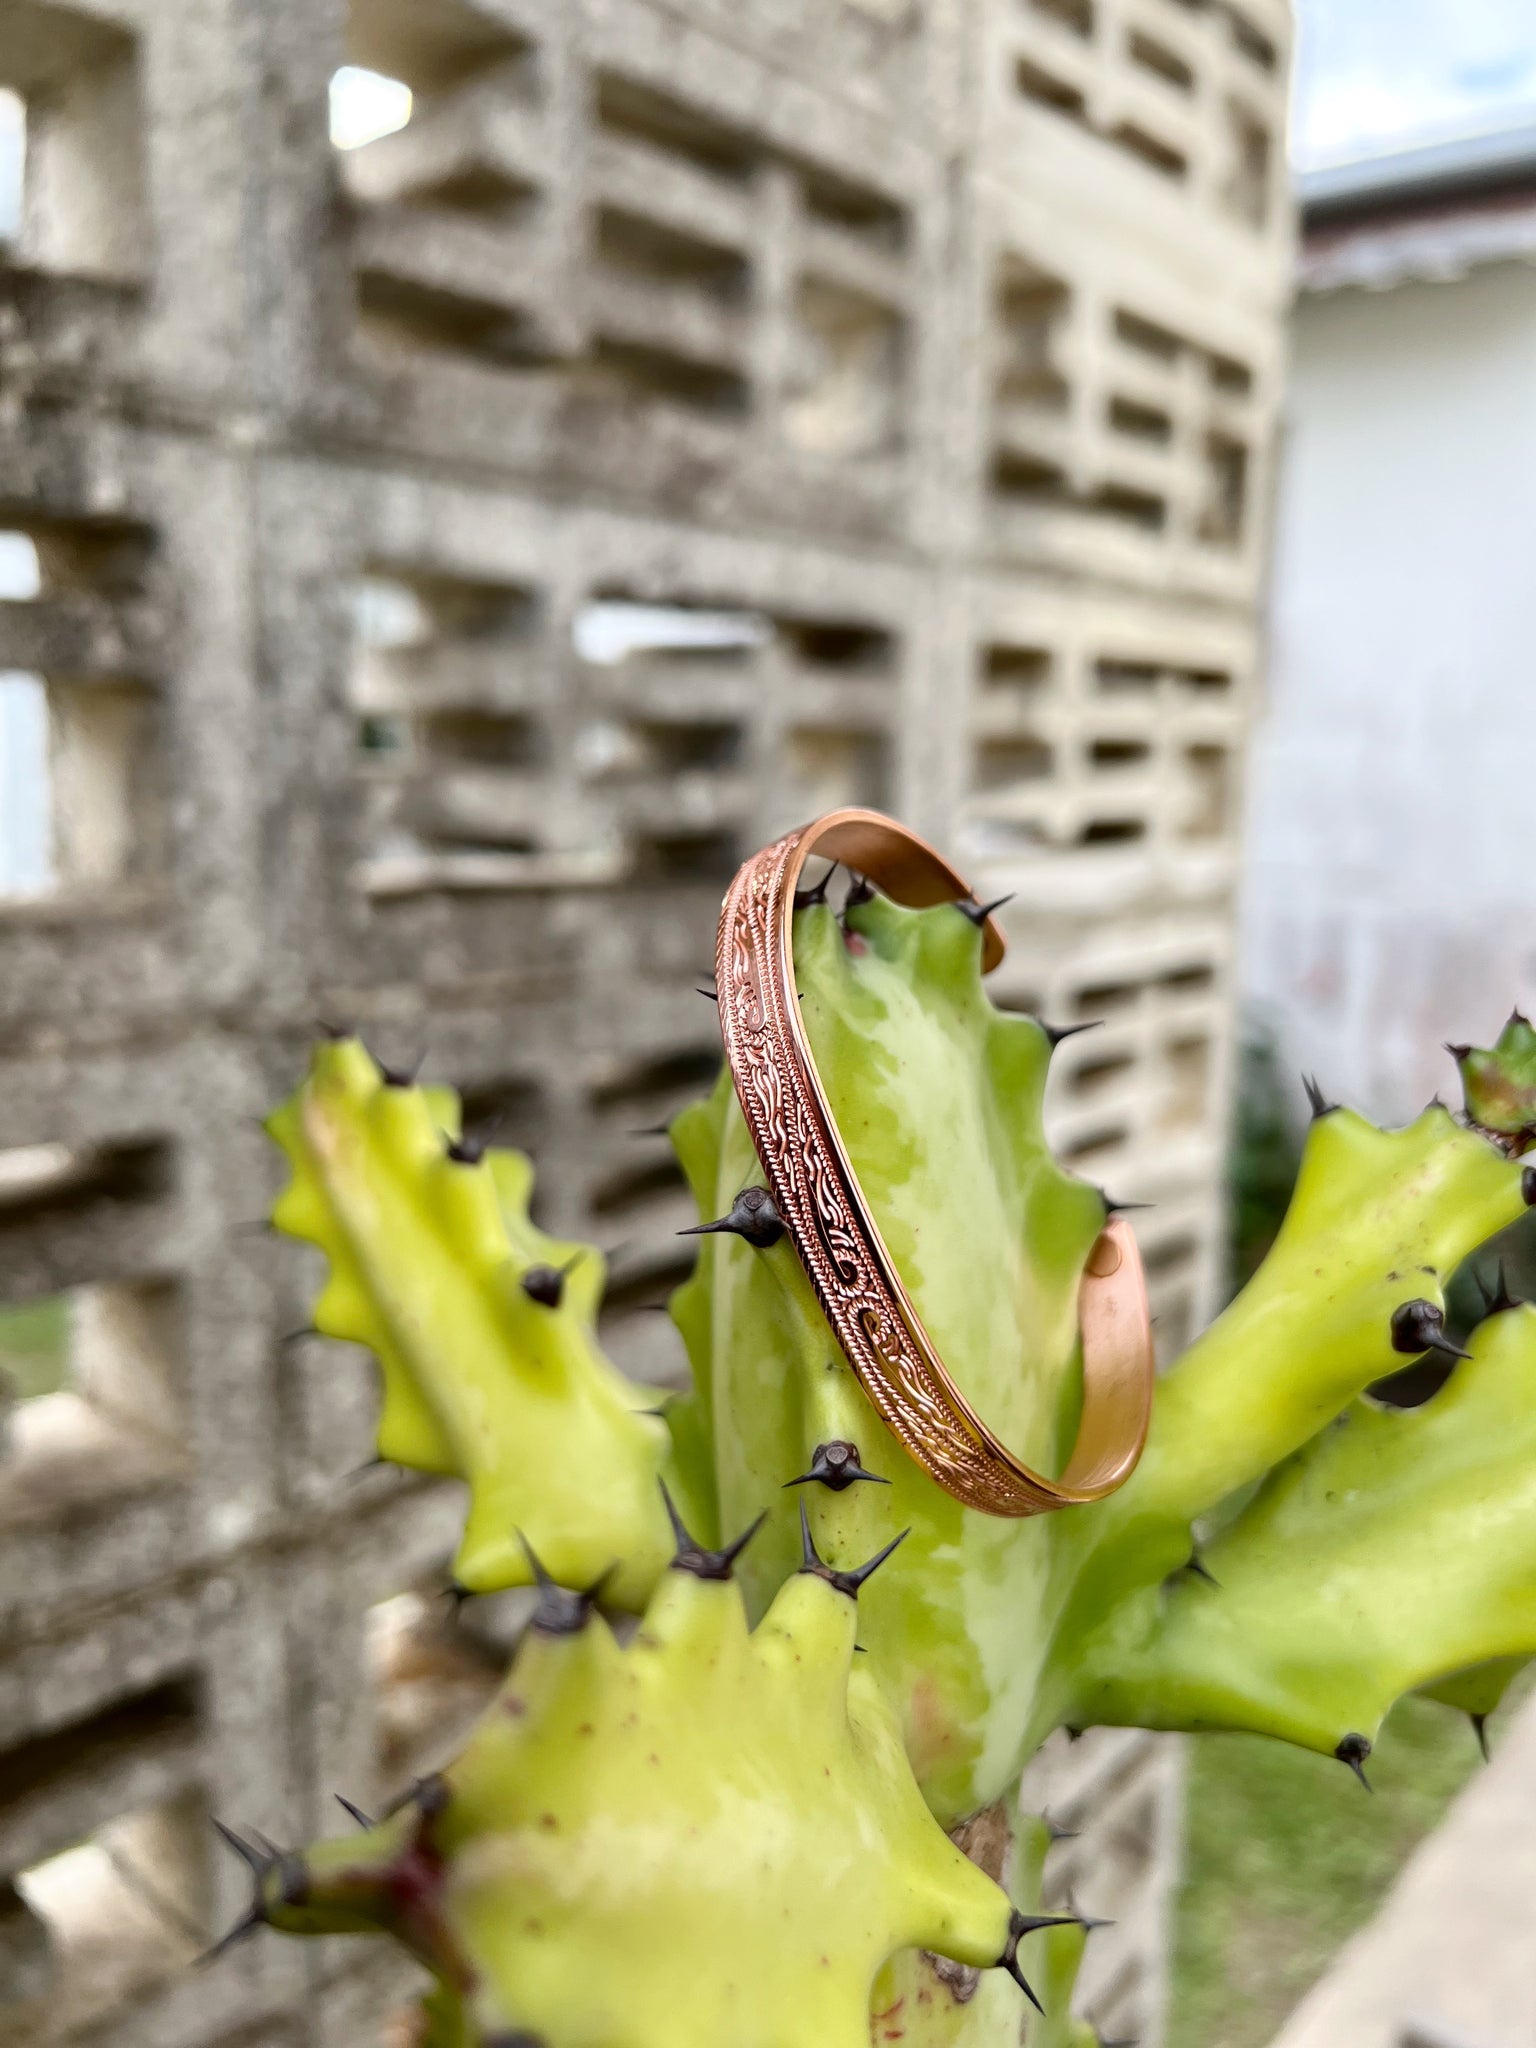 Copper Wristband